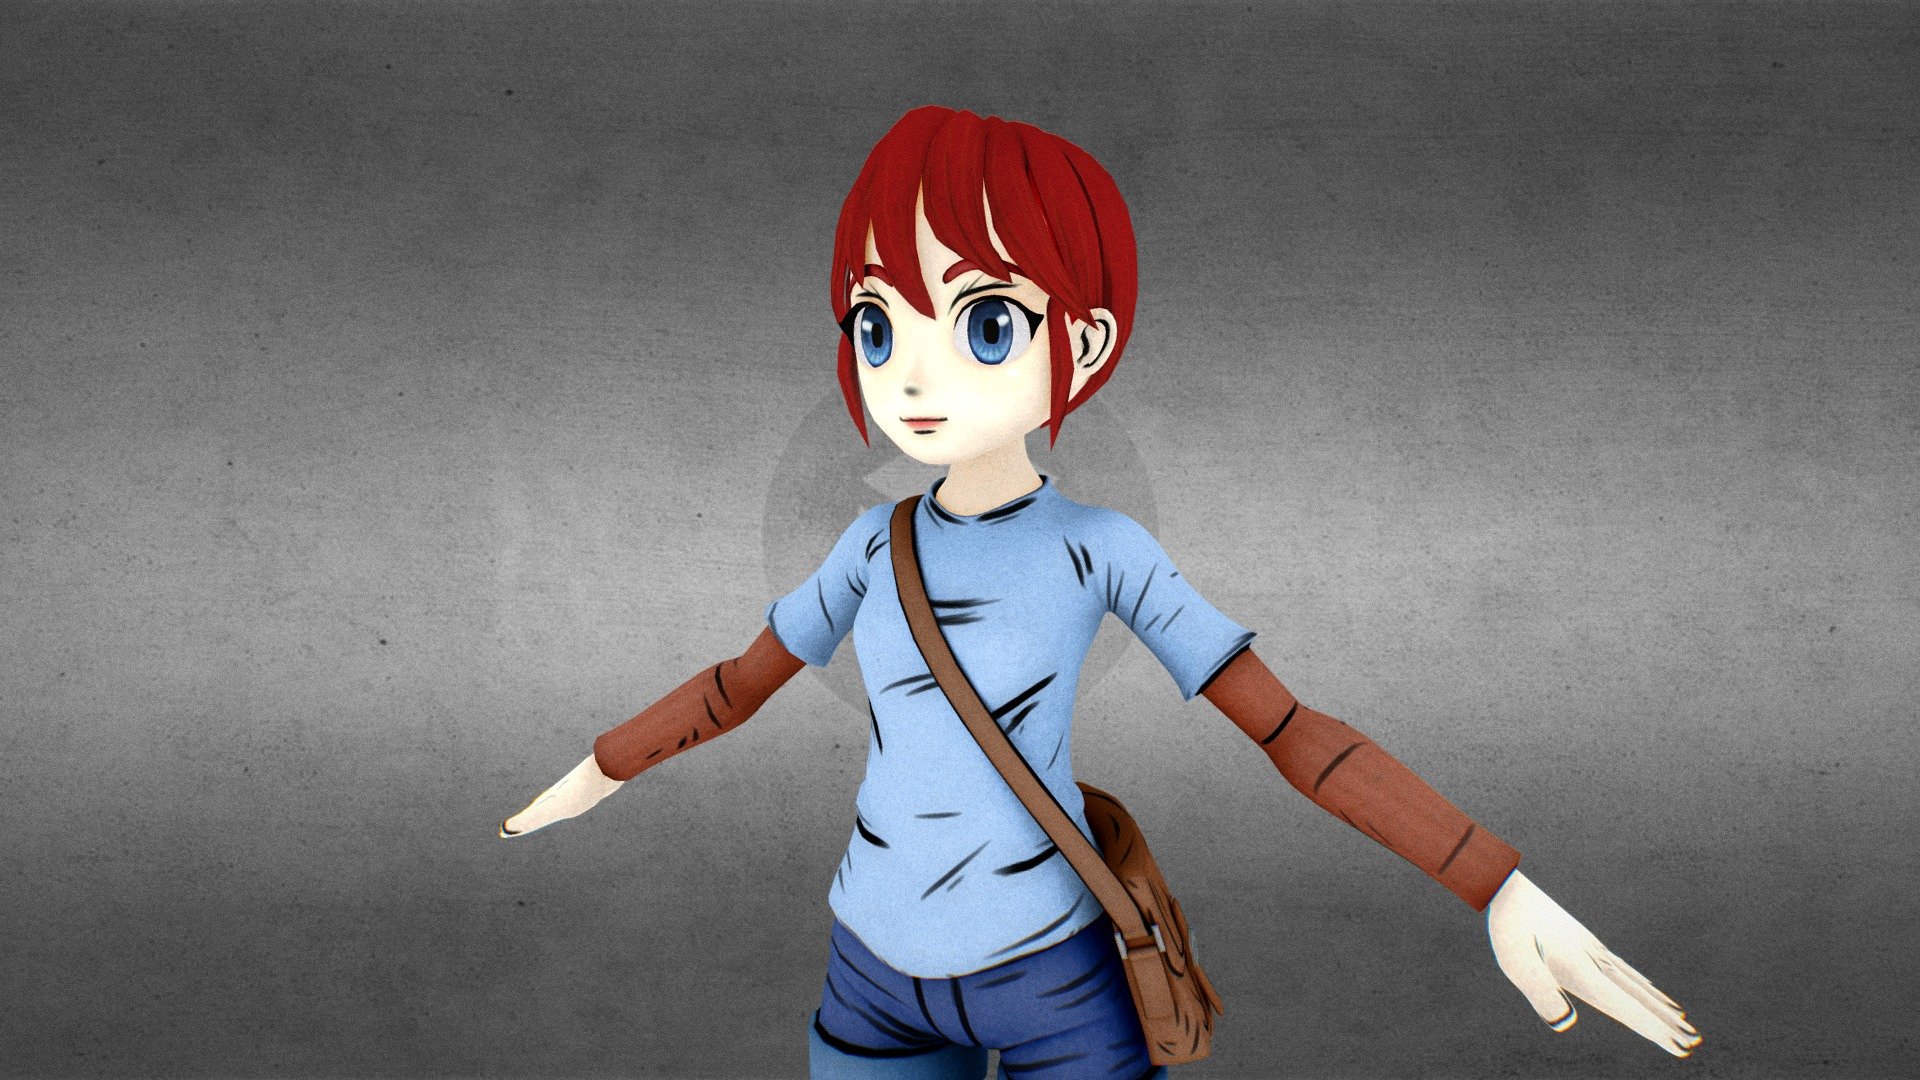 Cartoon girl - Toon Girl - 3D model by Alain Pierre (@alain.pierre) 3d model